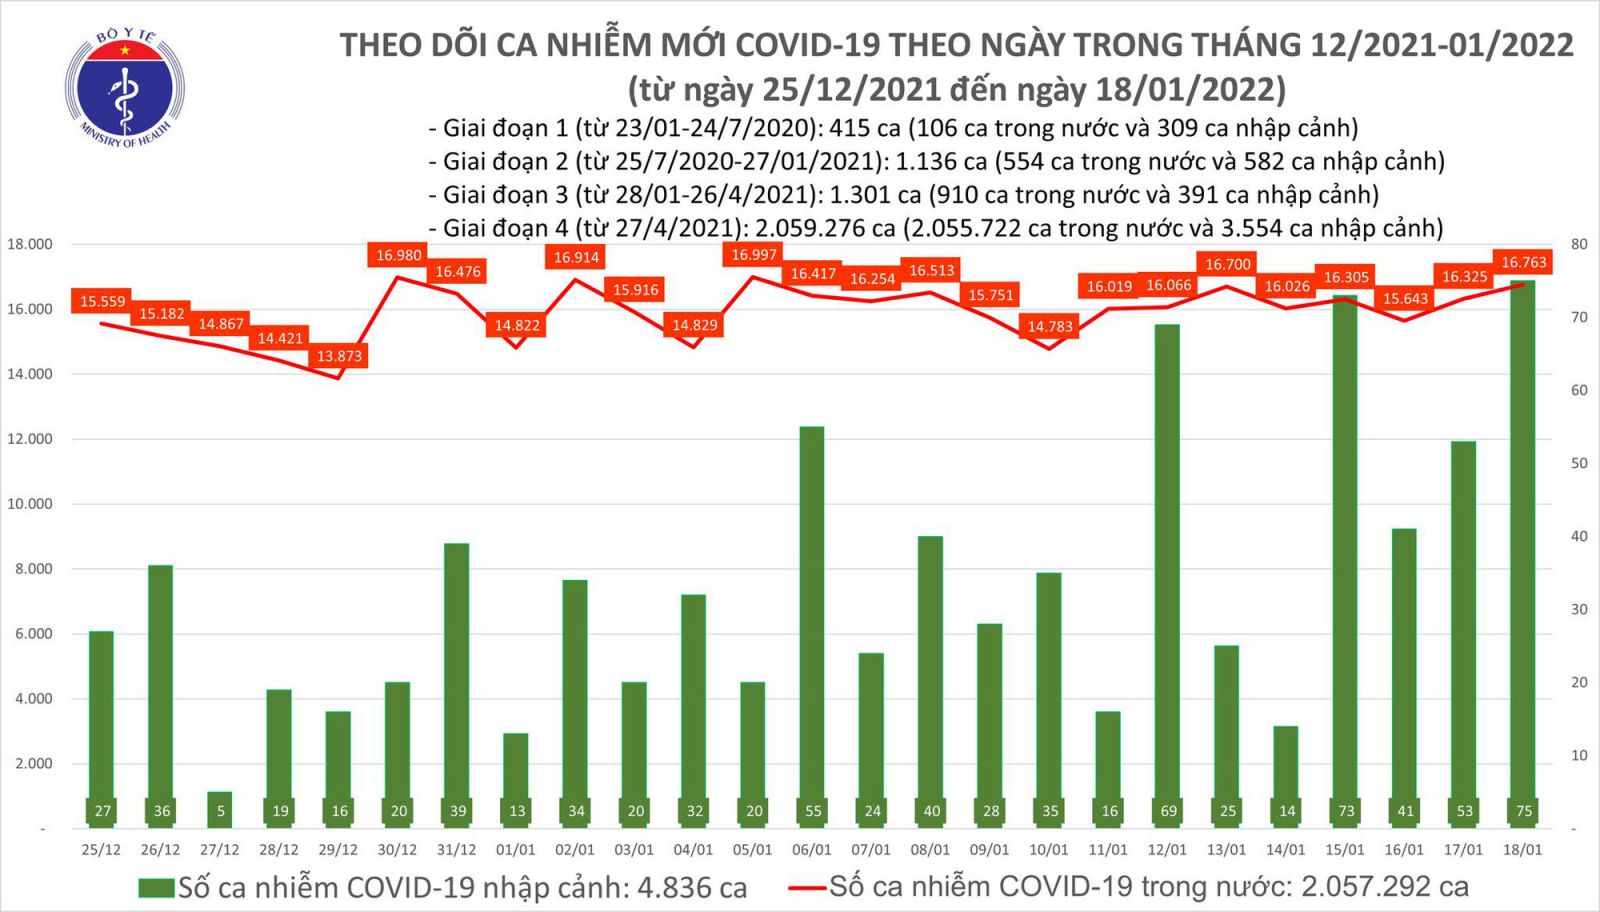 Ngày 18/1: Cả nước có 16.838 ca mắc COVID-19, Hà Nội nhiều nhất, tiếp theo là Hải Phòng